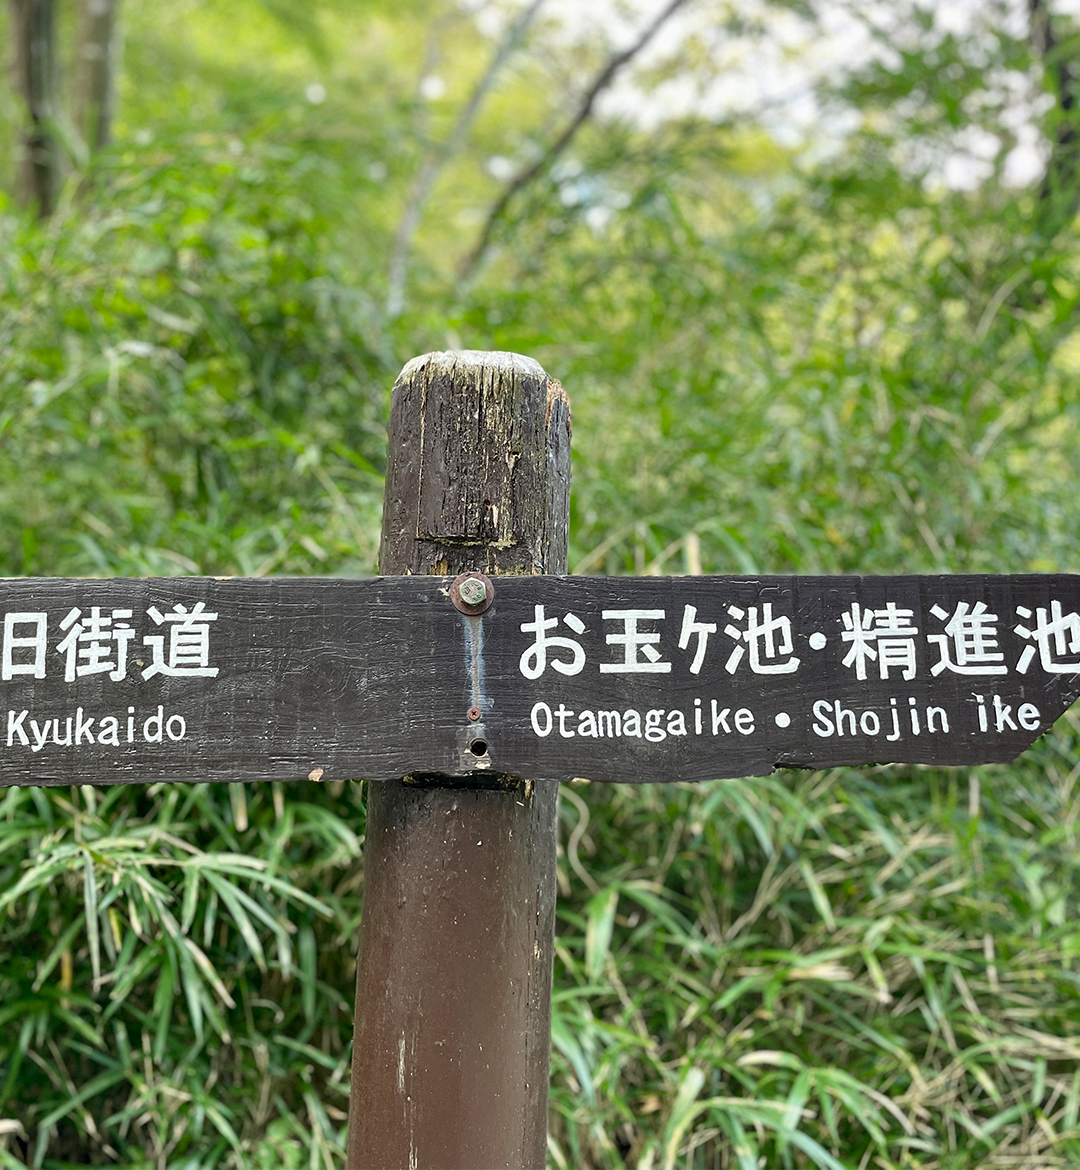 お玉が池と古道を踏みしめるツアー（箱根とシカについて考えるスタディツアー）